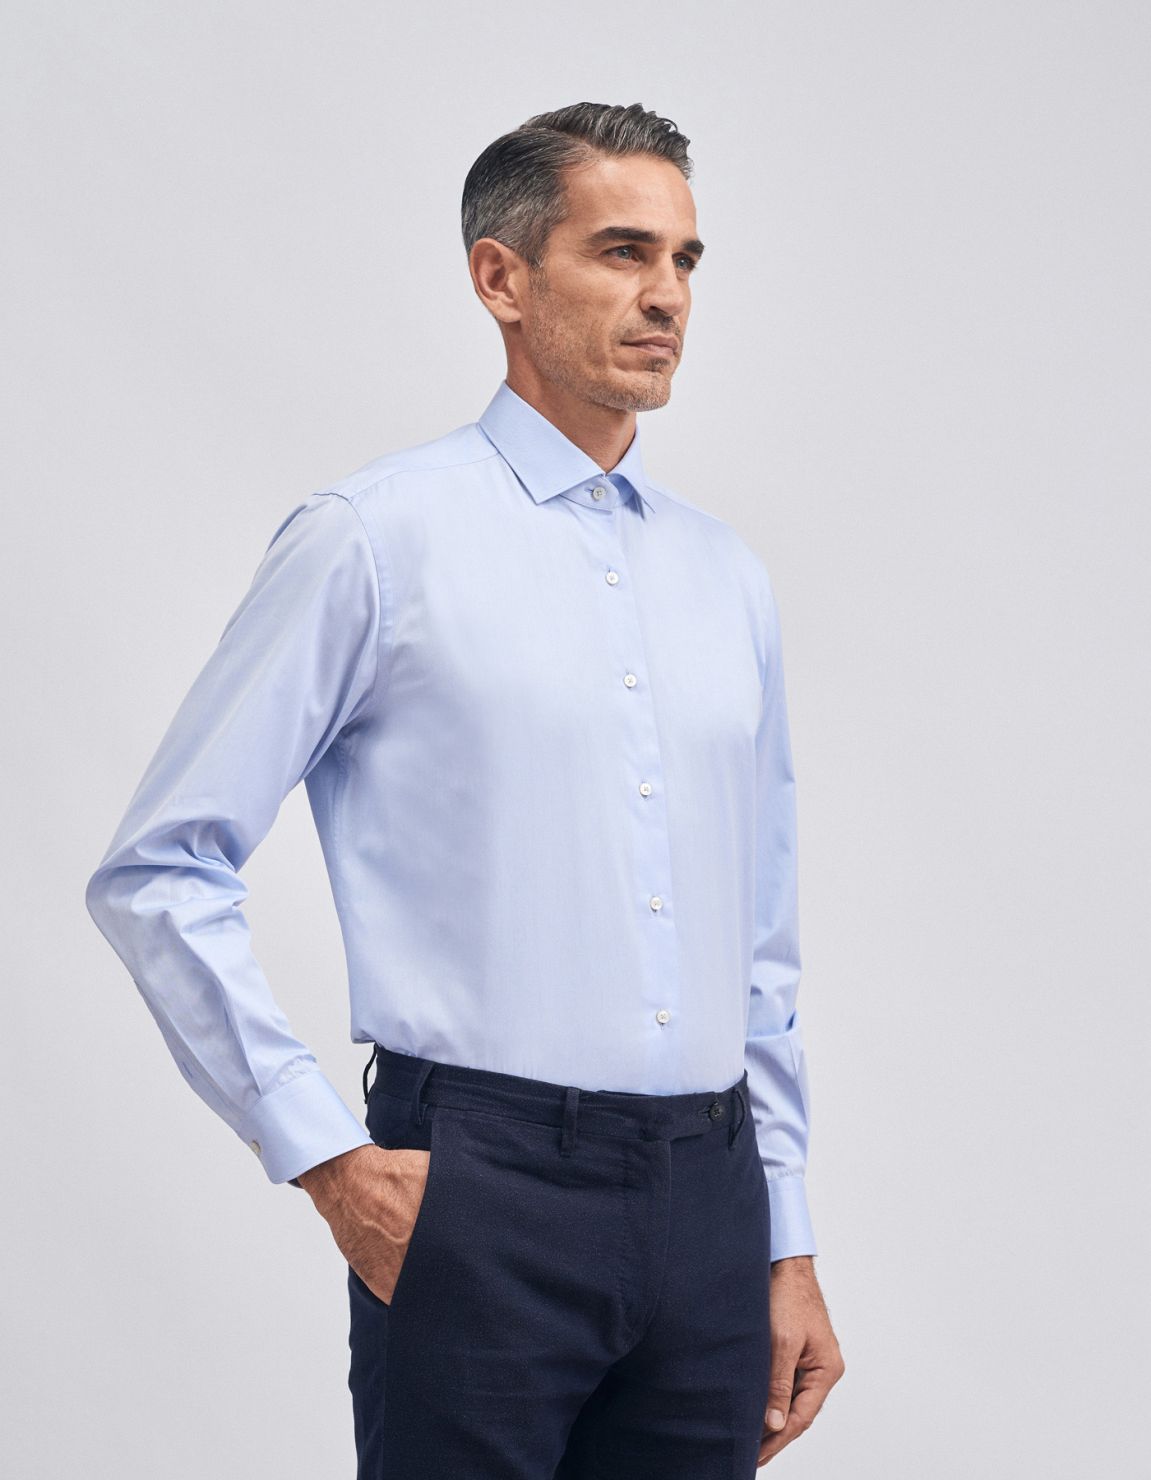 Shirt Collar small cutaway Light Blue Twill Evolution Classic Fit 1